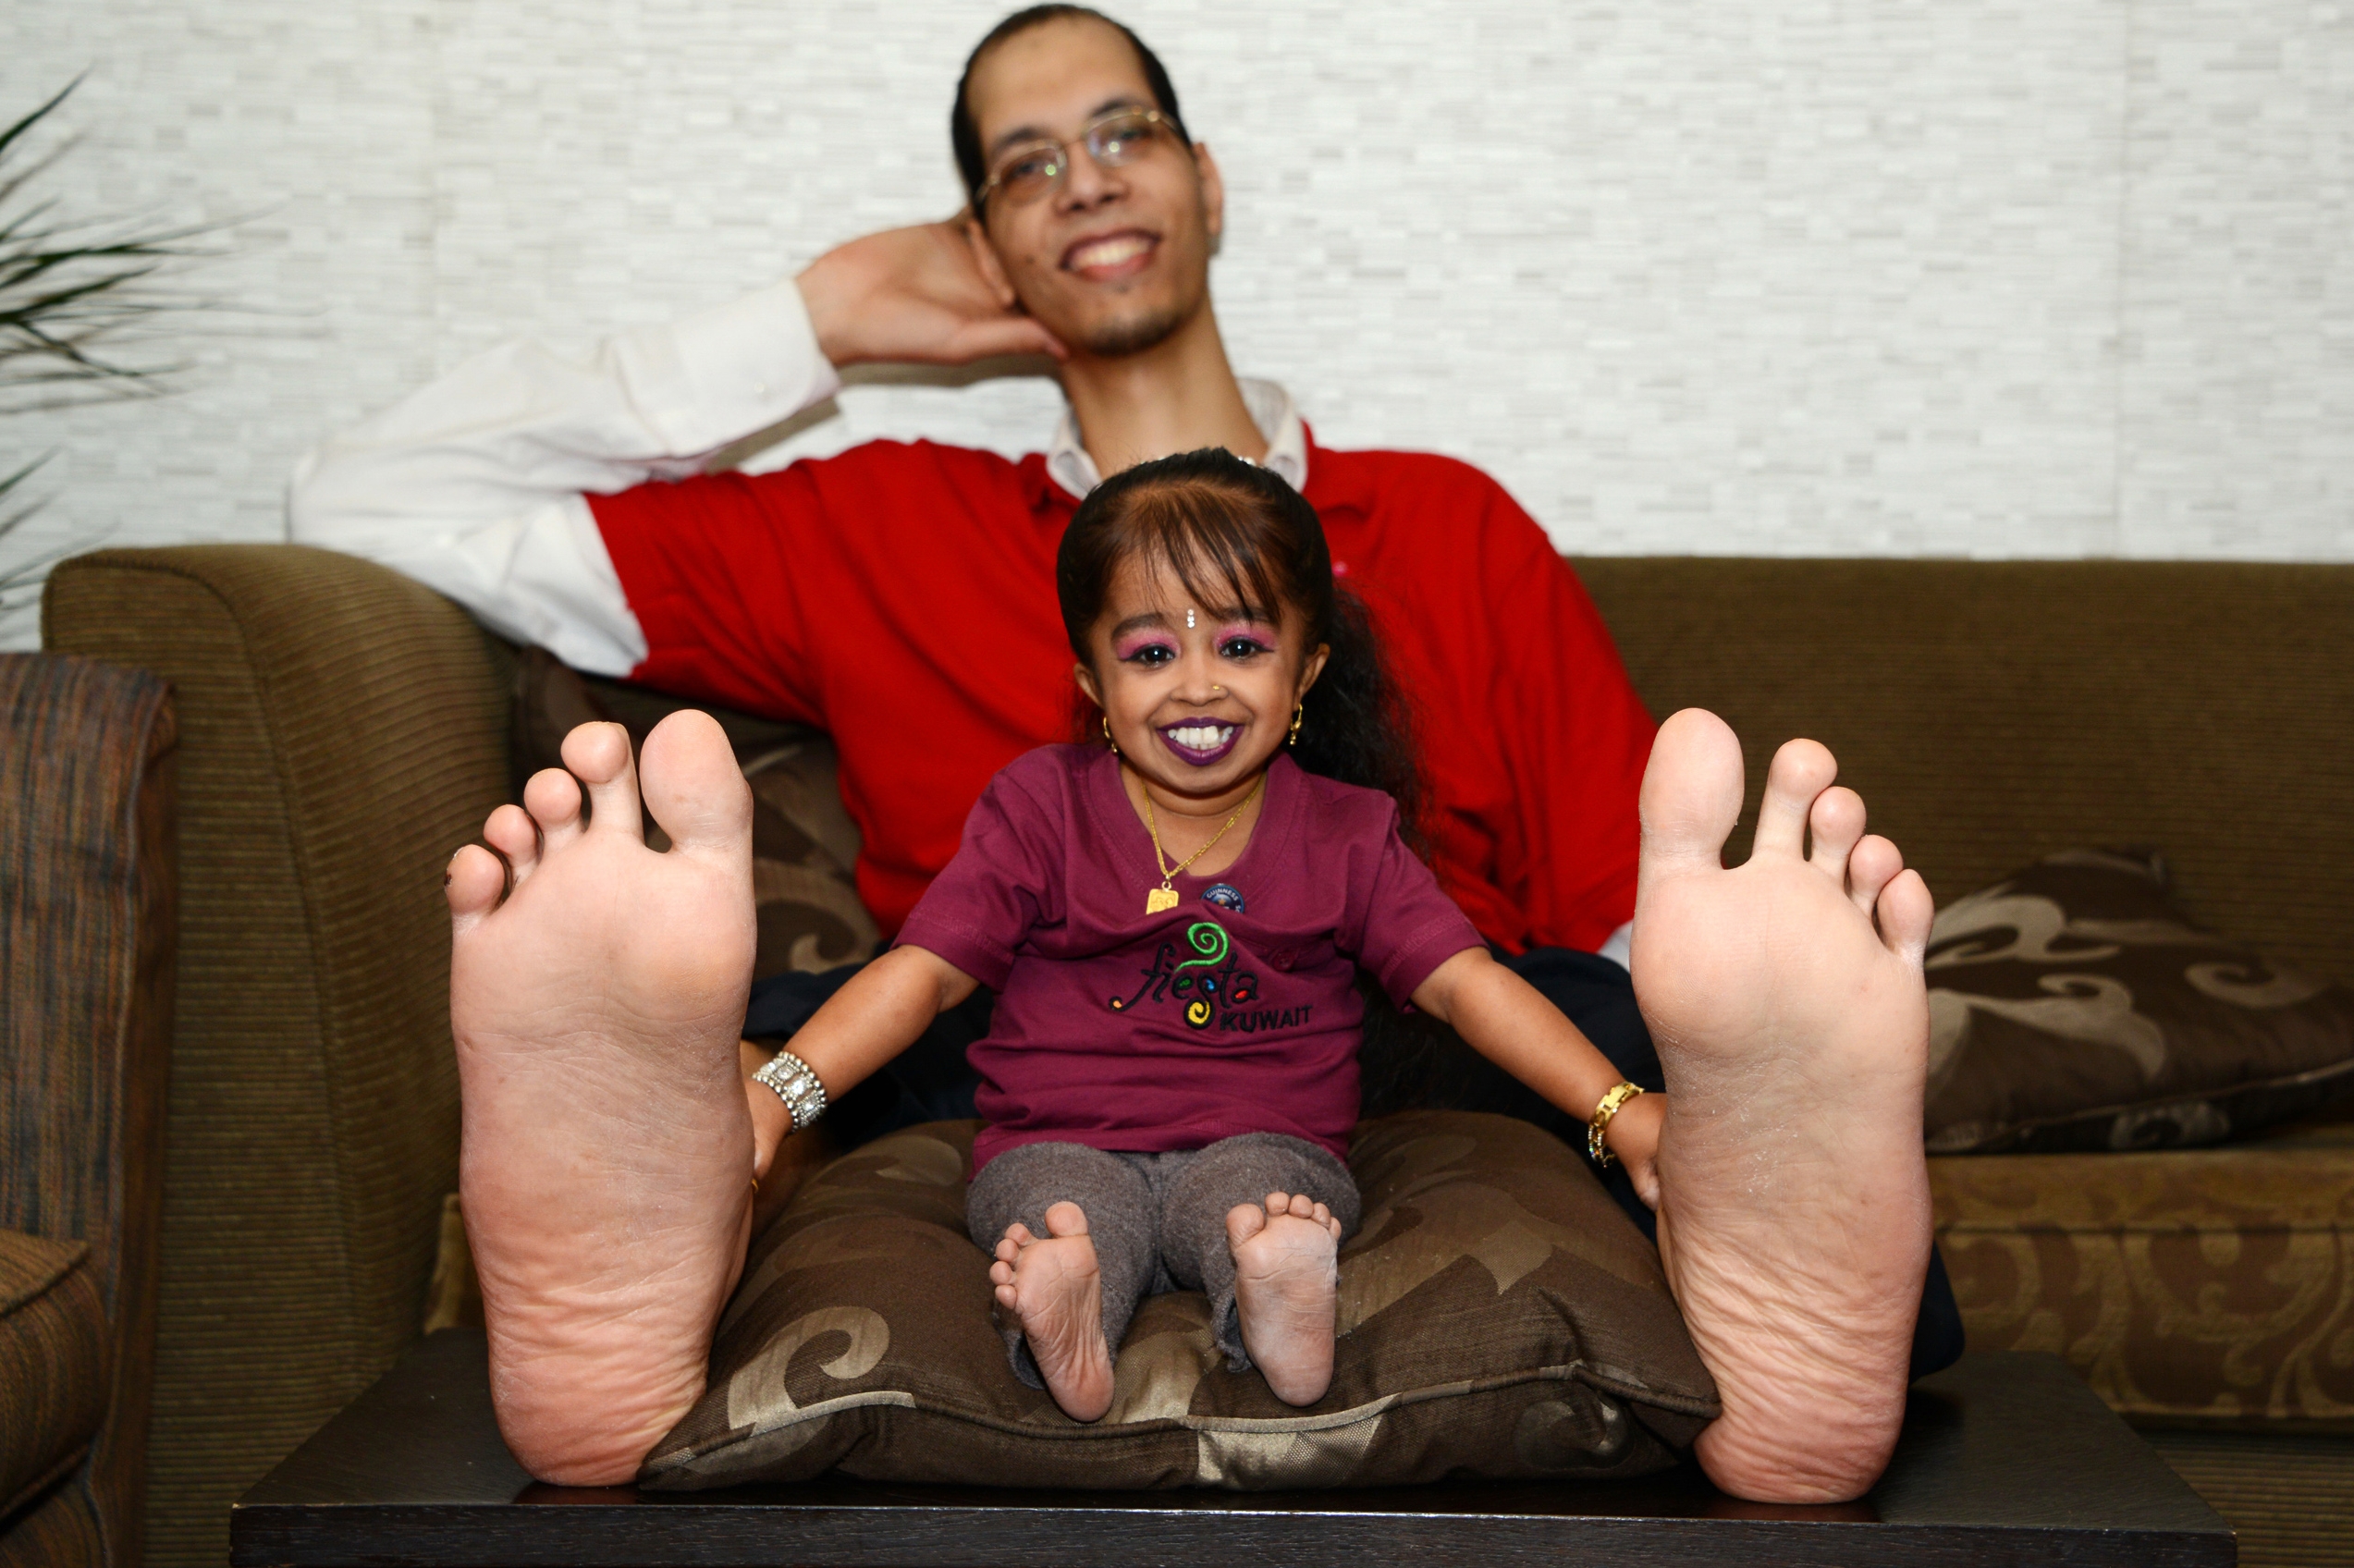 Mężczyzna z największymi stopami na świecie i najmniejsza kobieta